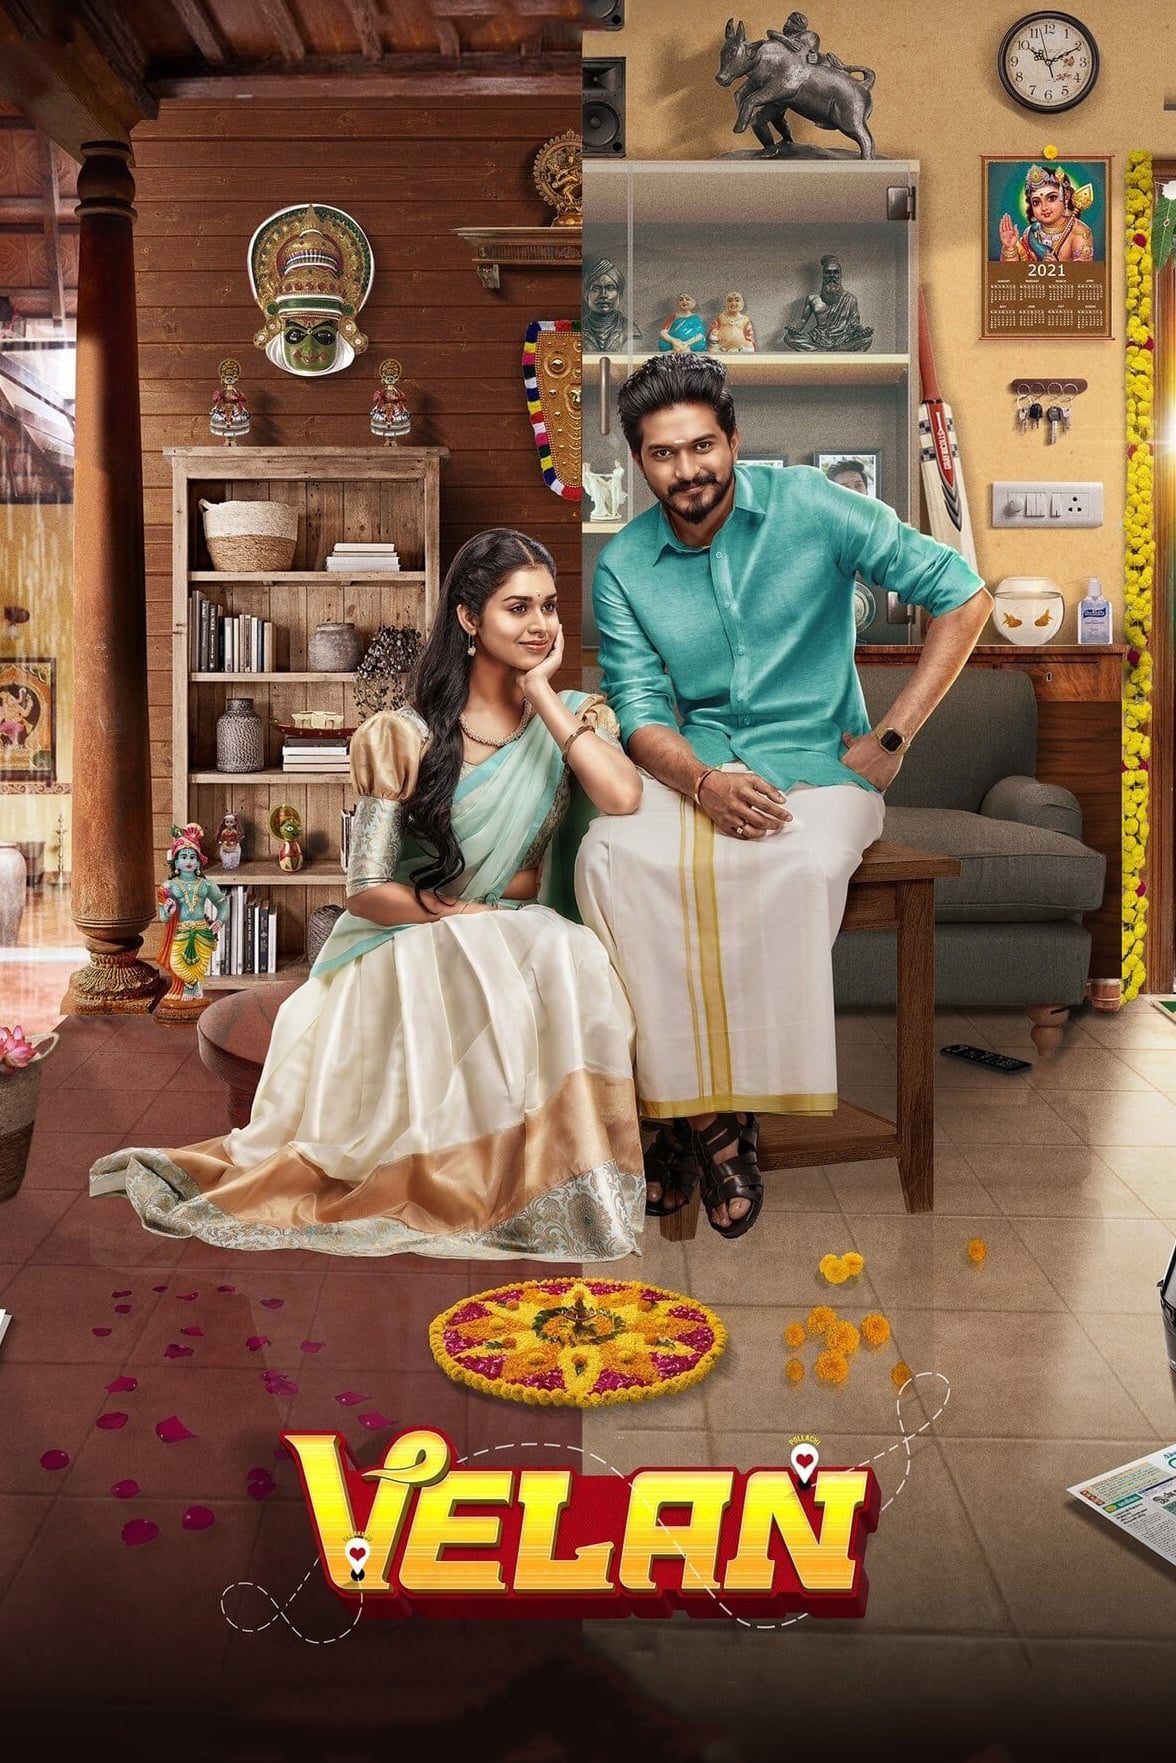 Poster for the movie "Velan"